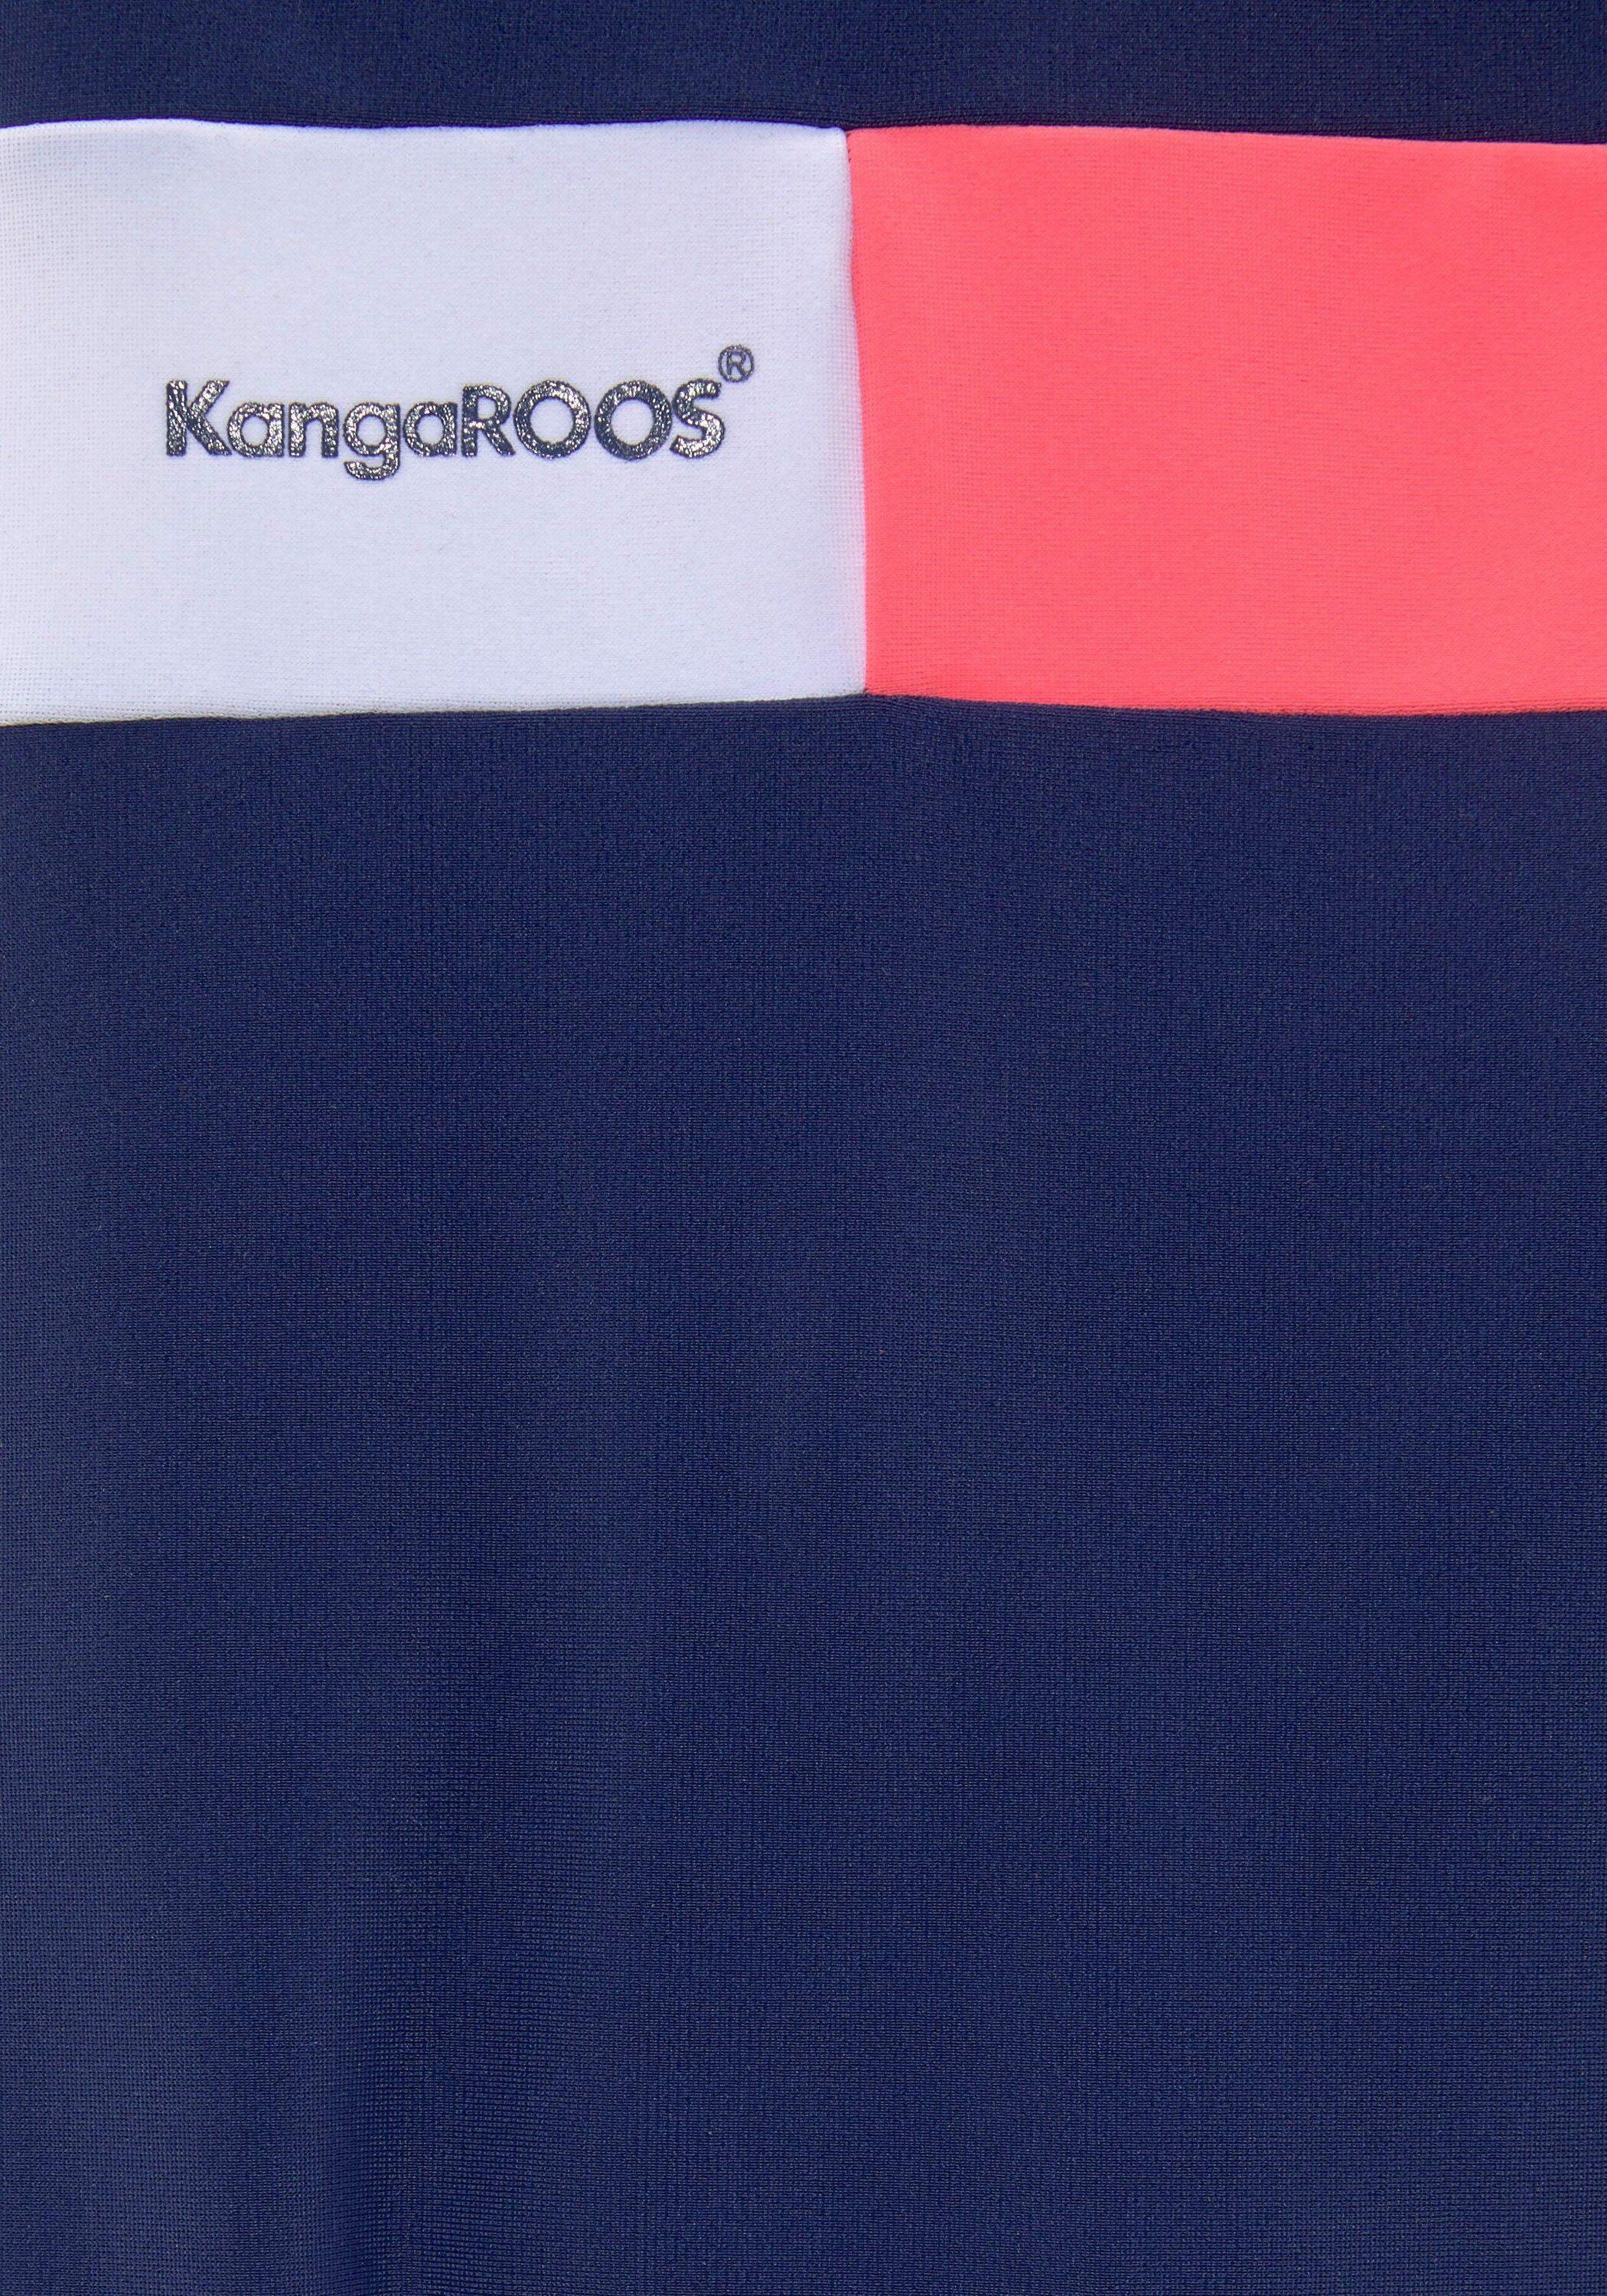 Damen im SportScheck Shop von Online marine-pink-weiß Badeanzug KangaROOS kaufen